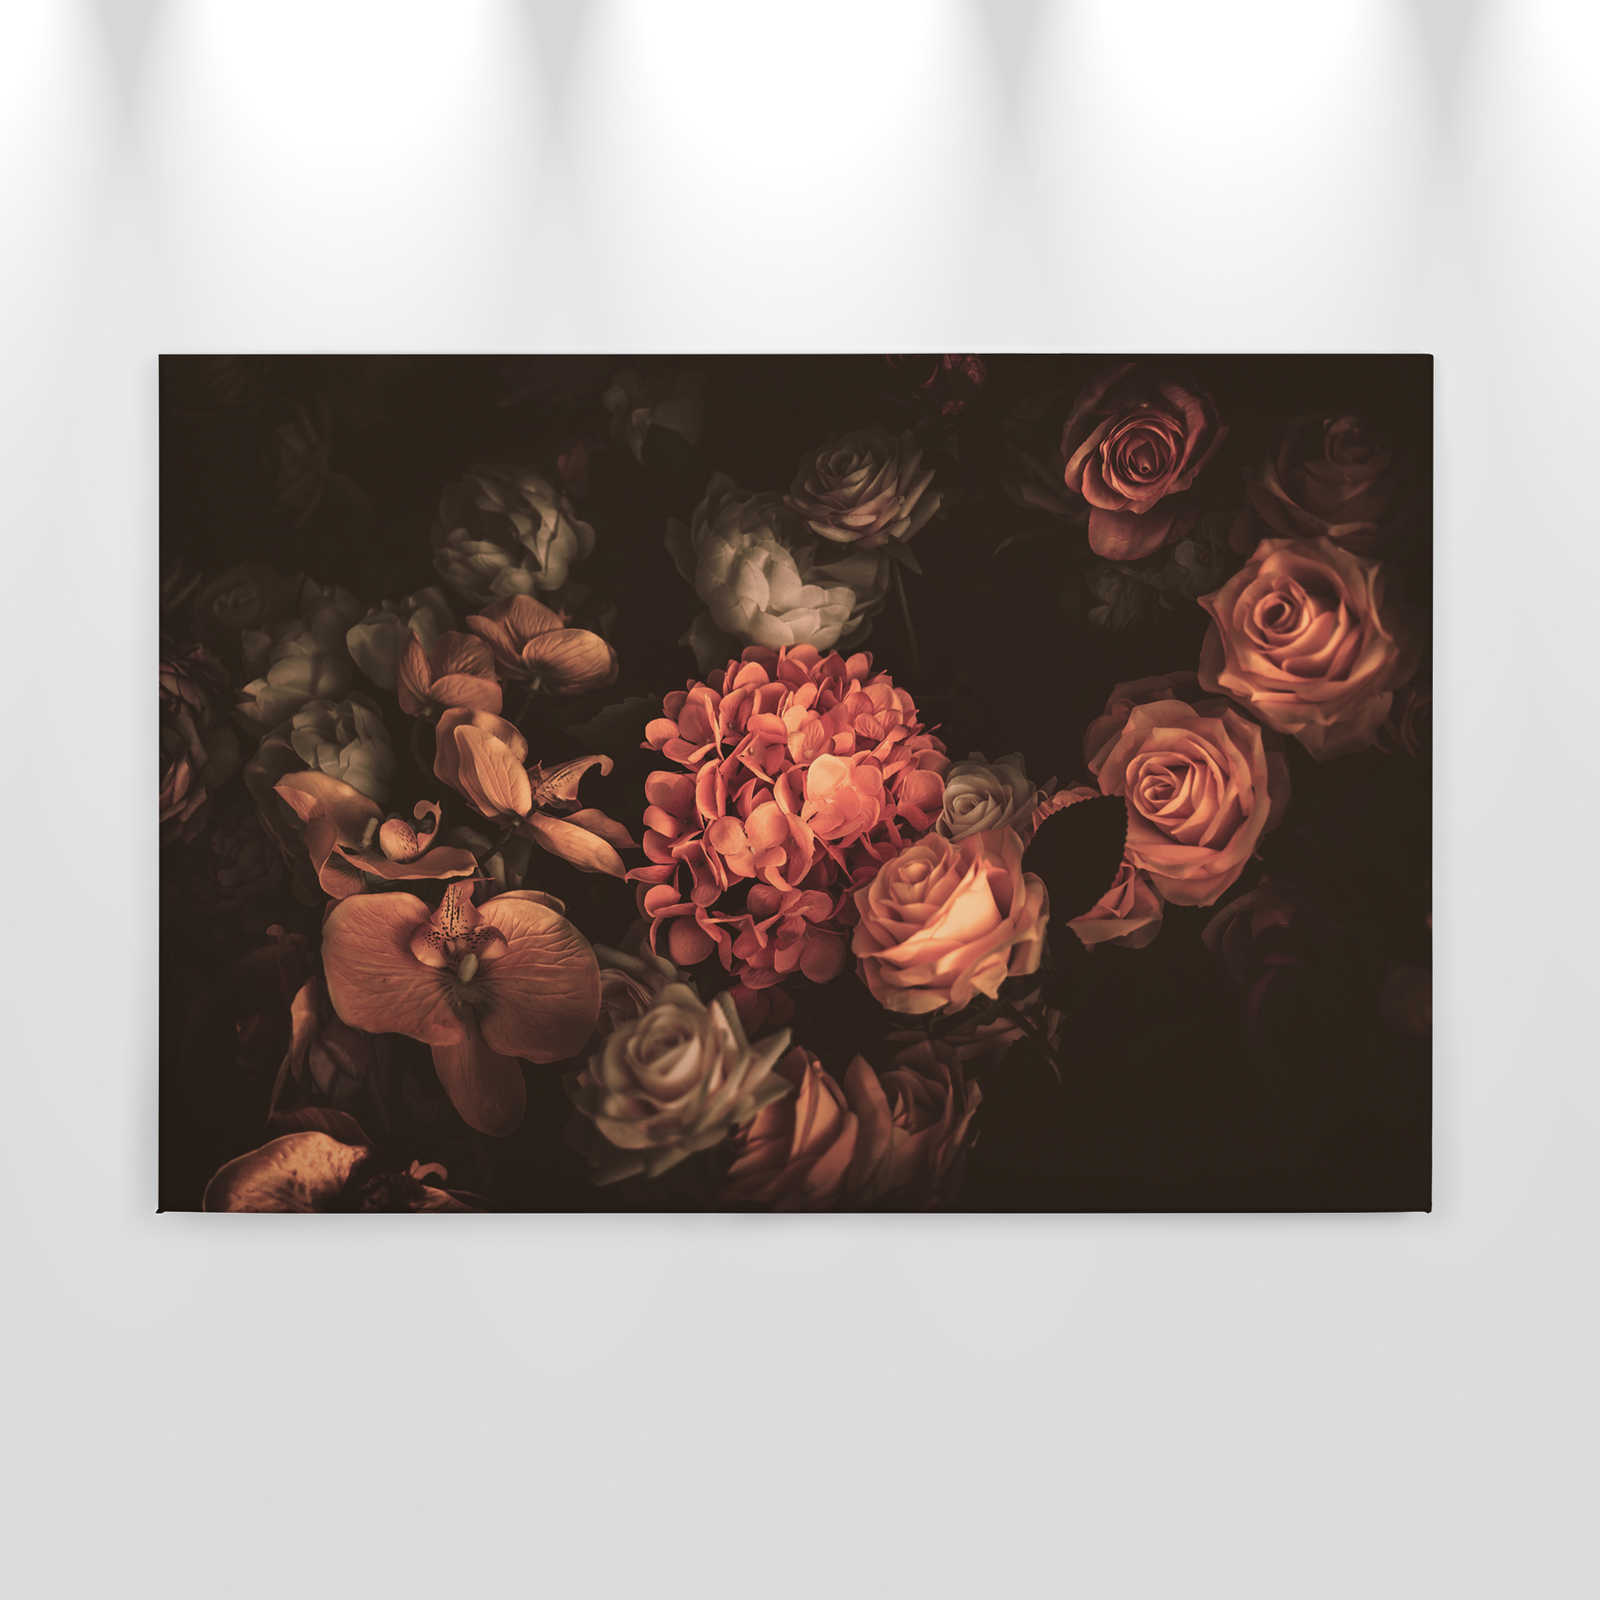             Lienzo romántico con ramo de flores - 0,90 m x 0,60 m
        